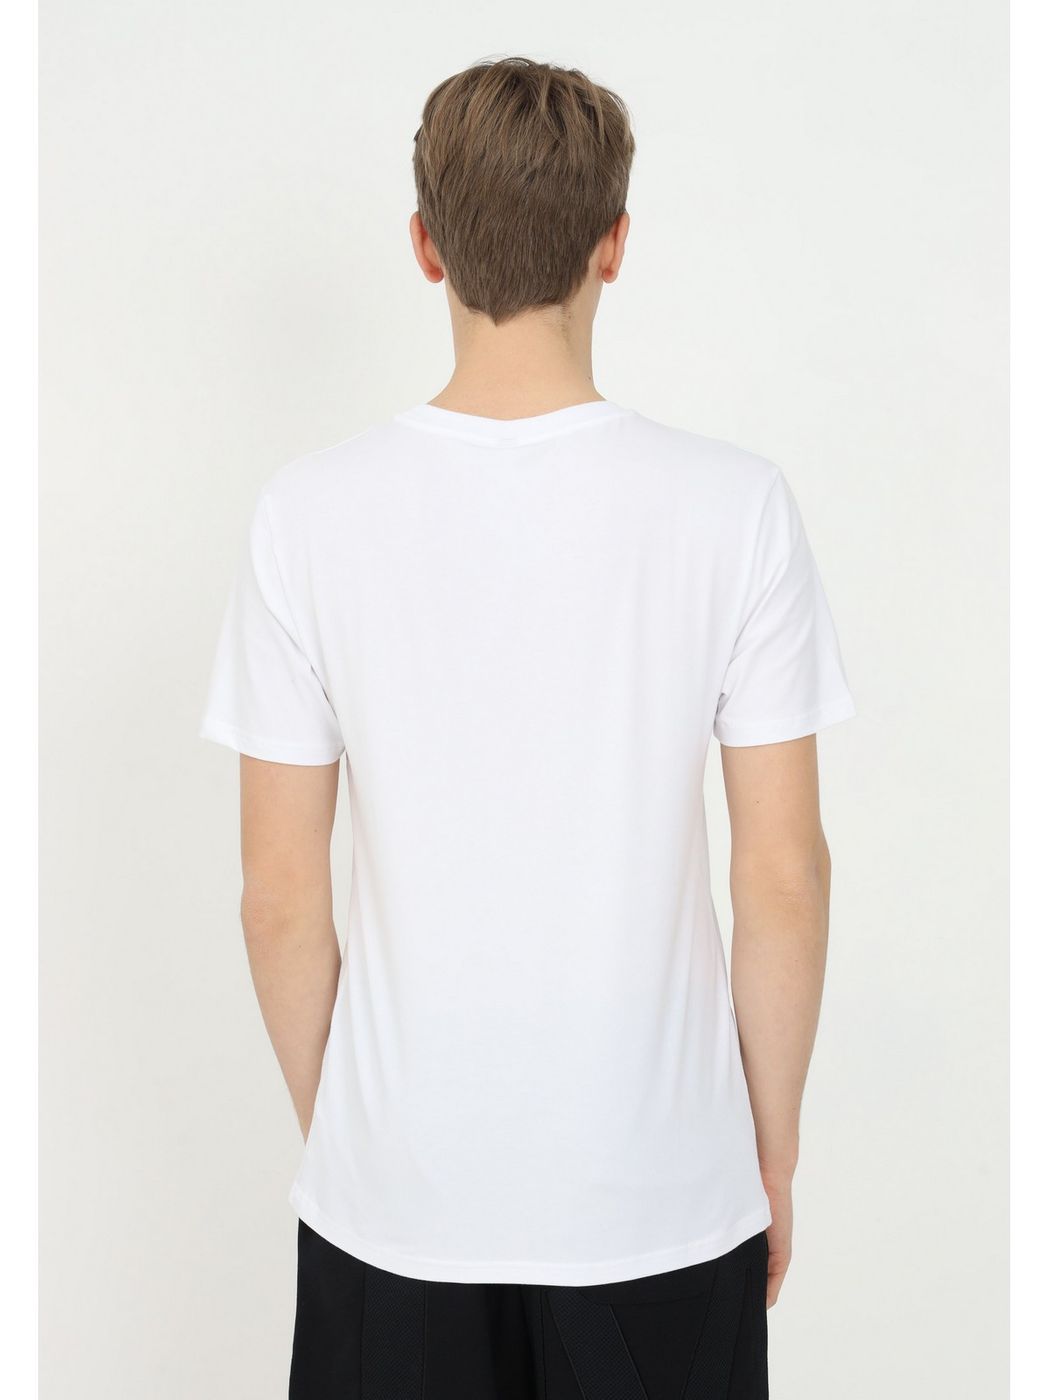 MOSCHINO UNDERWEAR T-Shirt et Polo Hommes 1904 2323 Blanc